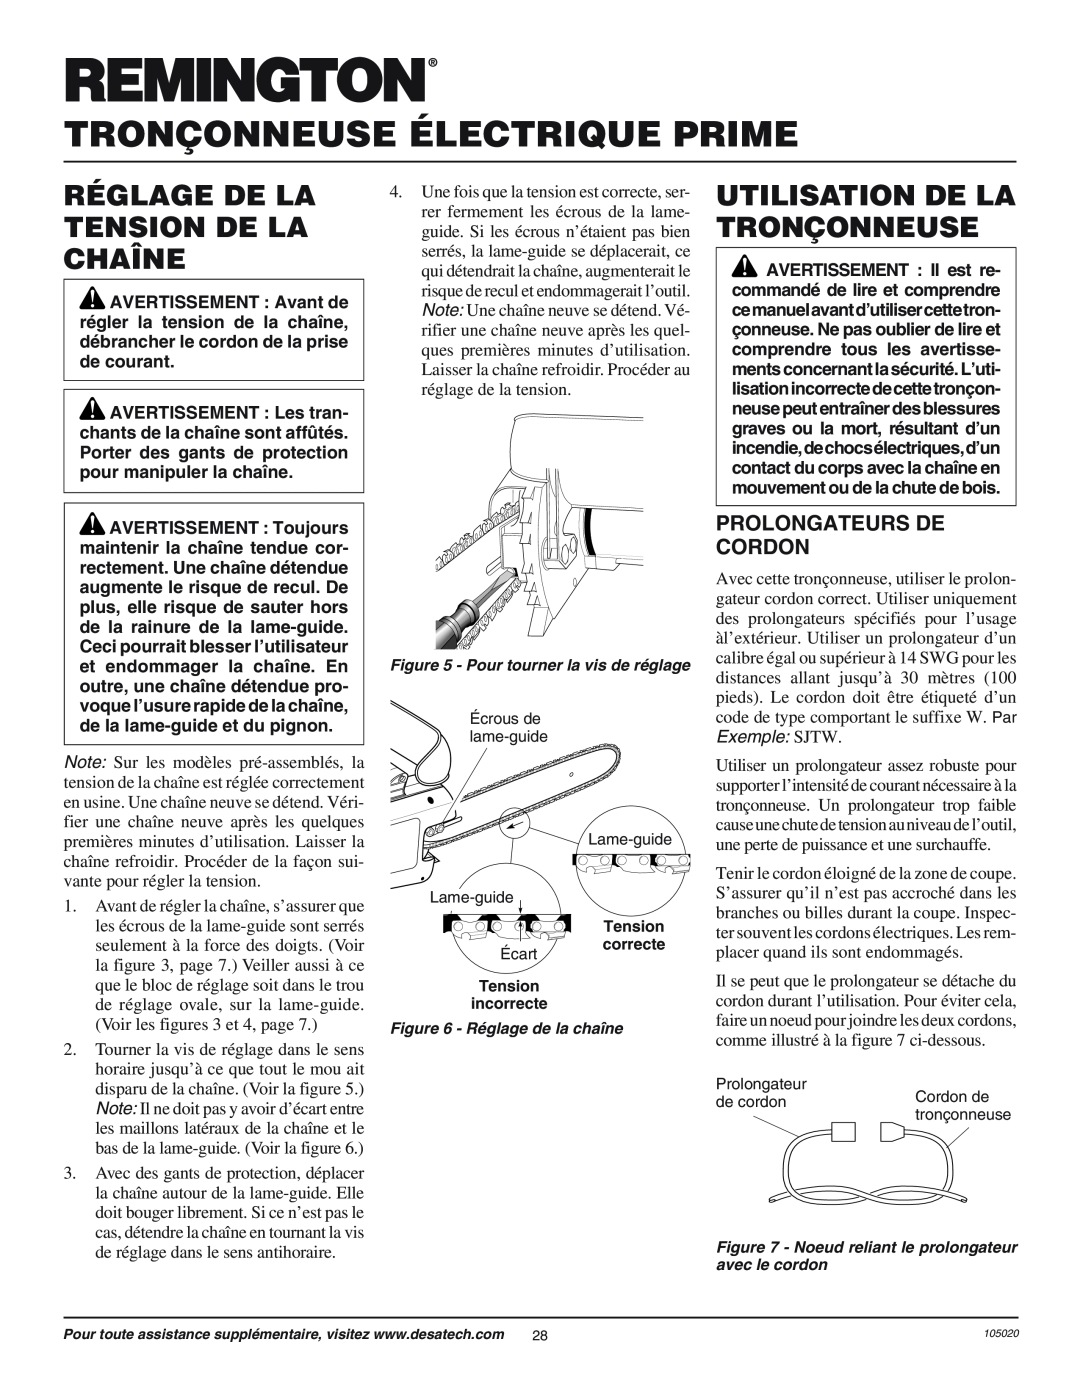 Desa LNT-2 10-inch owner manual Réglage De La Tension De La Chaîne, Utilisation De La Tronçonneuse, Prolongateurs De Cordon 